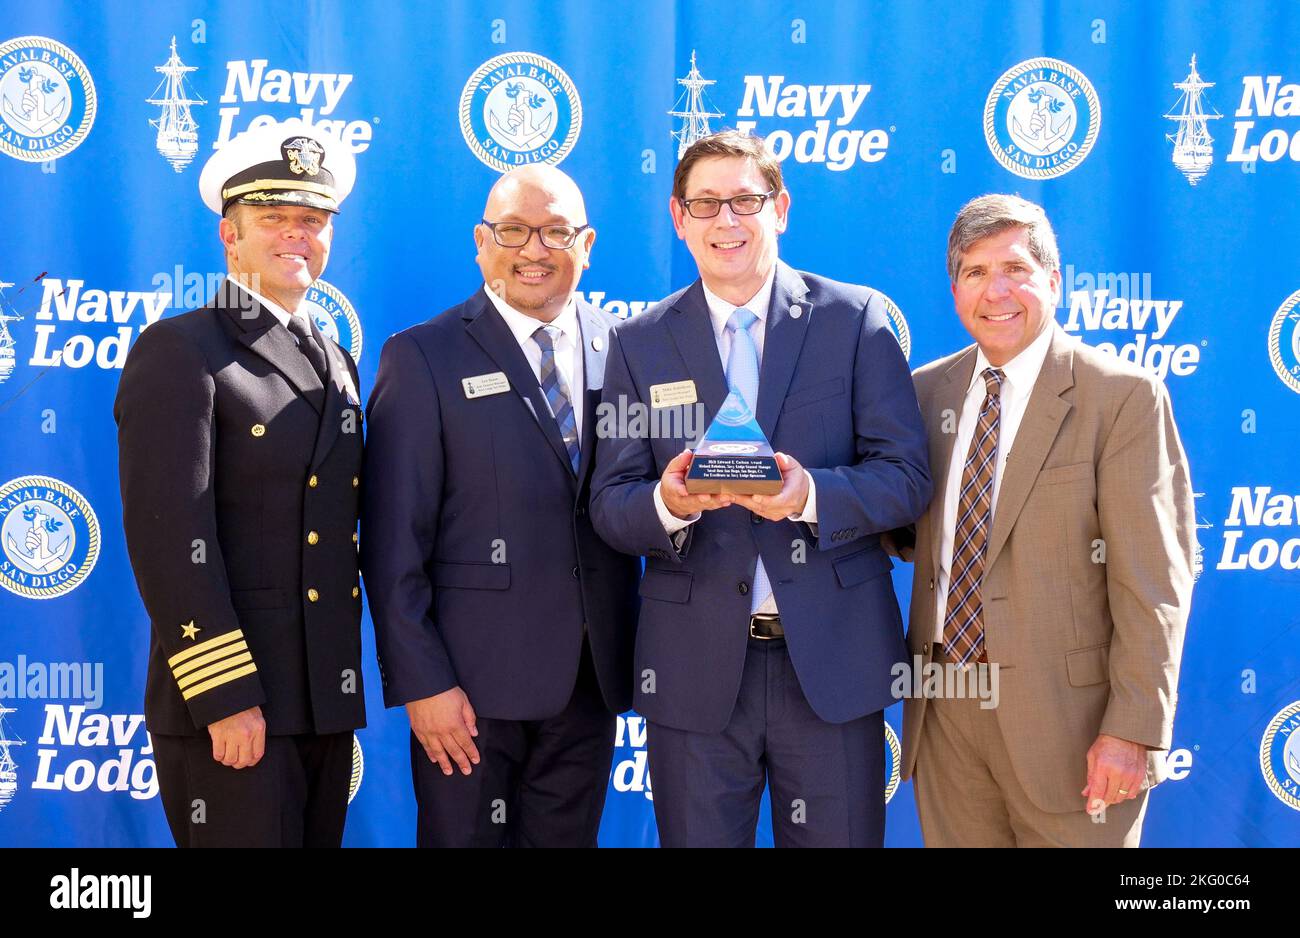 221018-N-RP435-1136 BASE NAVALE SAN DIEGO (OCT 18, 2022) le capitaine Ted Carlson, commandant de la base navale de San Diego (NBSD) pose avec les gestionnaires de la Marine Lodge de la NBSD et le sous-ministre adjoint. (ret) Robert Bianchi, chef de la direction du Commandement de la Marine Exchange, lors d'une cérémonie de remise des prix le 18 octobre 2022. La cérémonie a reconnu le NBSD Navy Lodge pour avoir remporté le prix Edward E. Carlson, grande catégorie du Marine Exchange Command Lodge Program. Le prix est décerné au Navy Lodge qui a obtenu les meilleurs scores en termes de satisfaction des clients et des associés, d'exploitation, d'évaluation de l'assurance qualité et de rendement financier. Banque D'Images